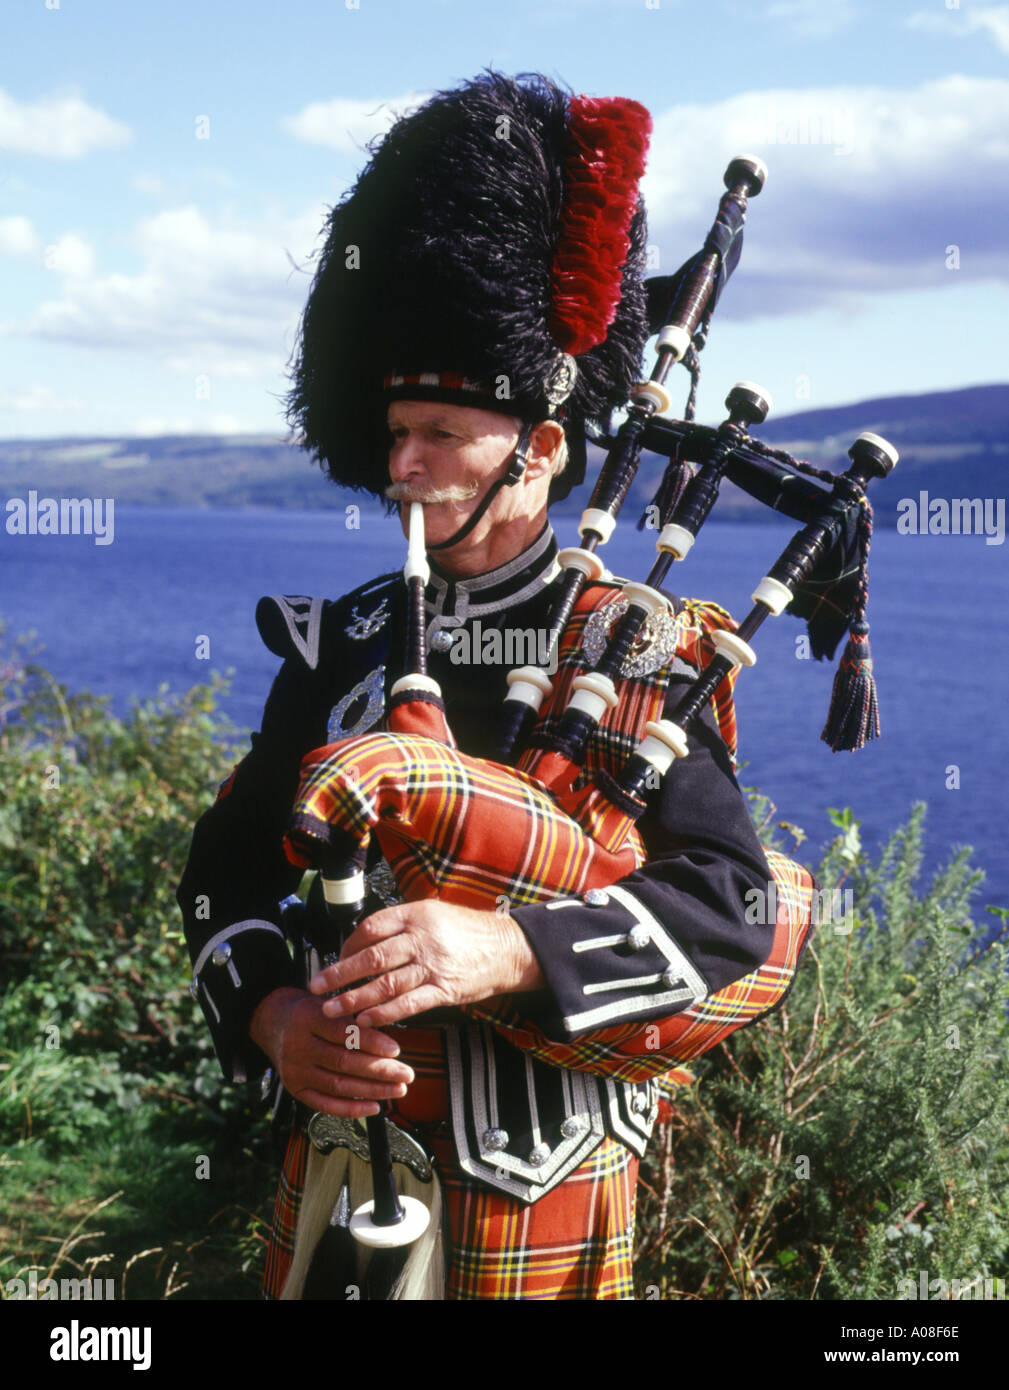 dh CORNEMUSES SCOTLAND Scottish Piper tartan kilt uniforme Highland traditionnel highlander sac de cornemuse tuyaux habit costume national musique des hauts plateaux Banque D'Images